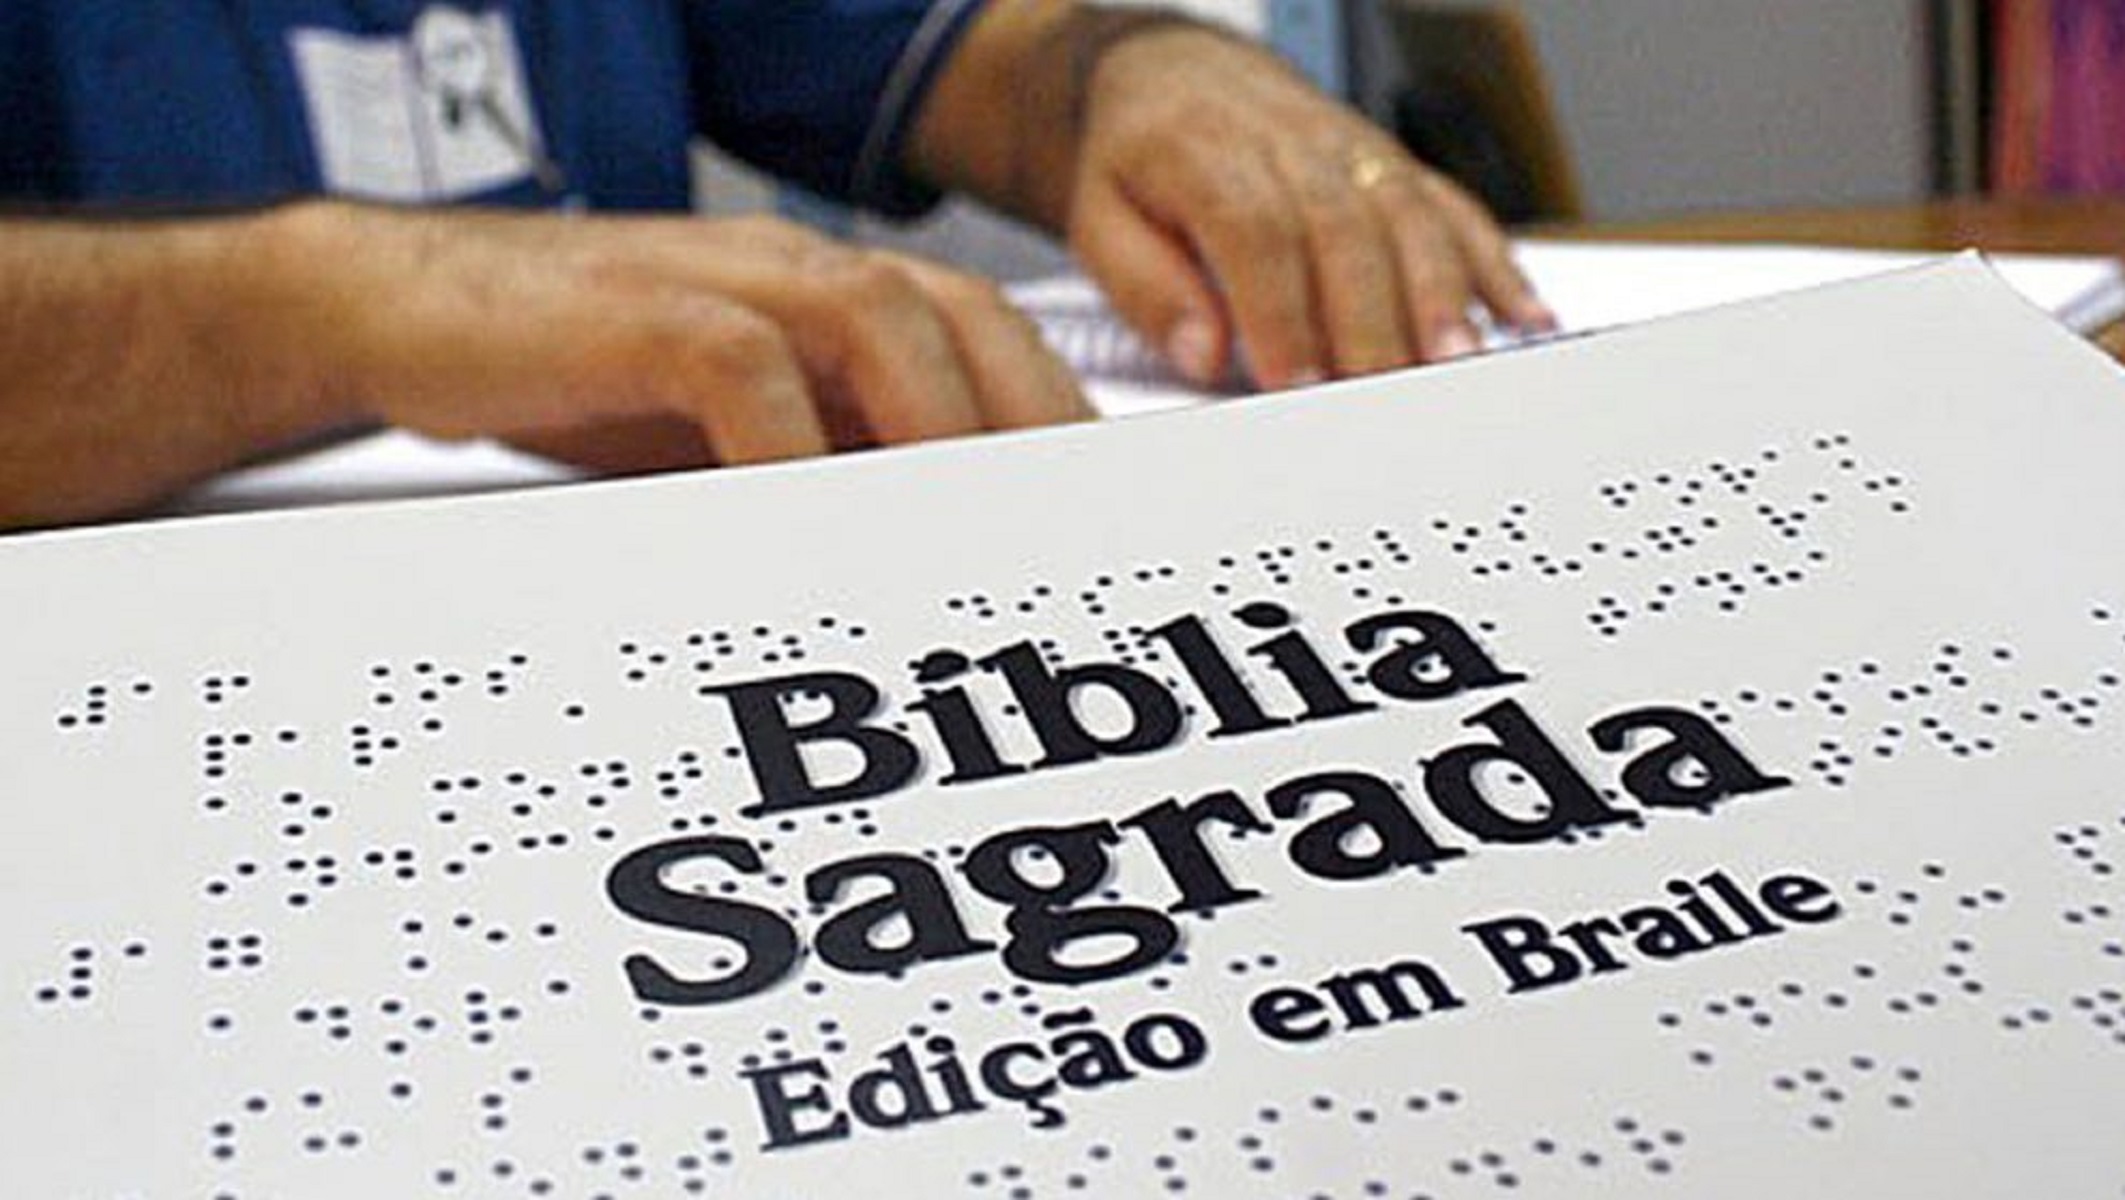 Fundação José Augusto recebe doação de bíblia em Braille